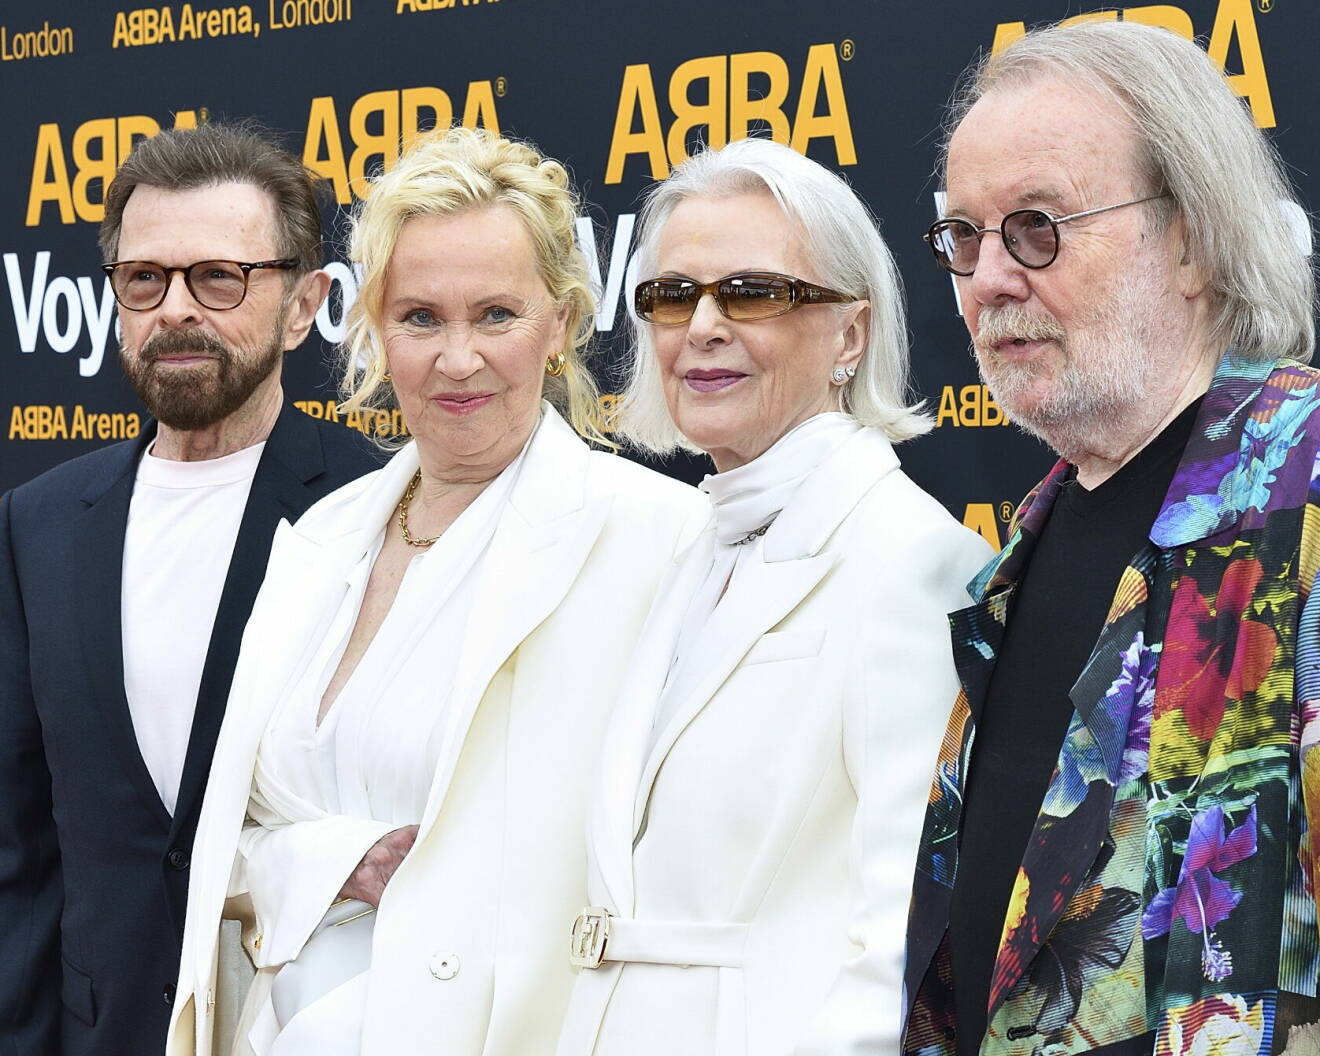 Medlemmarna i Abba: Björn Ulvaeus, Agnetha Fältskog, Anni-Frid Lyngstad och Benny Andersson